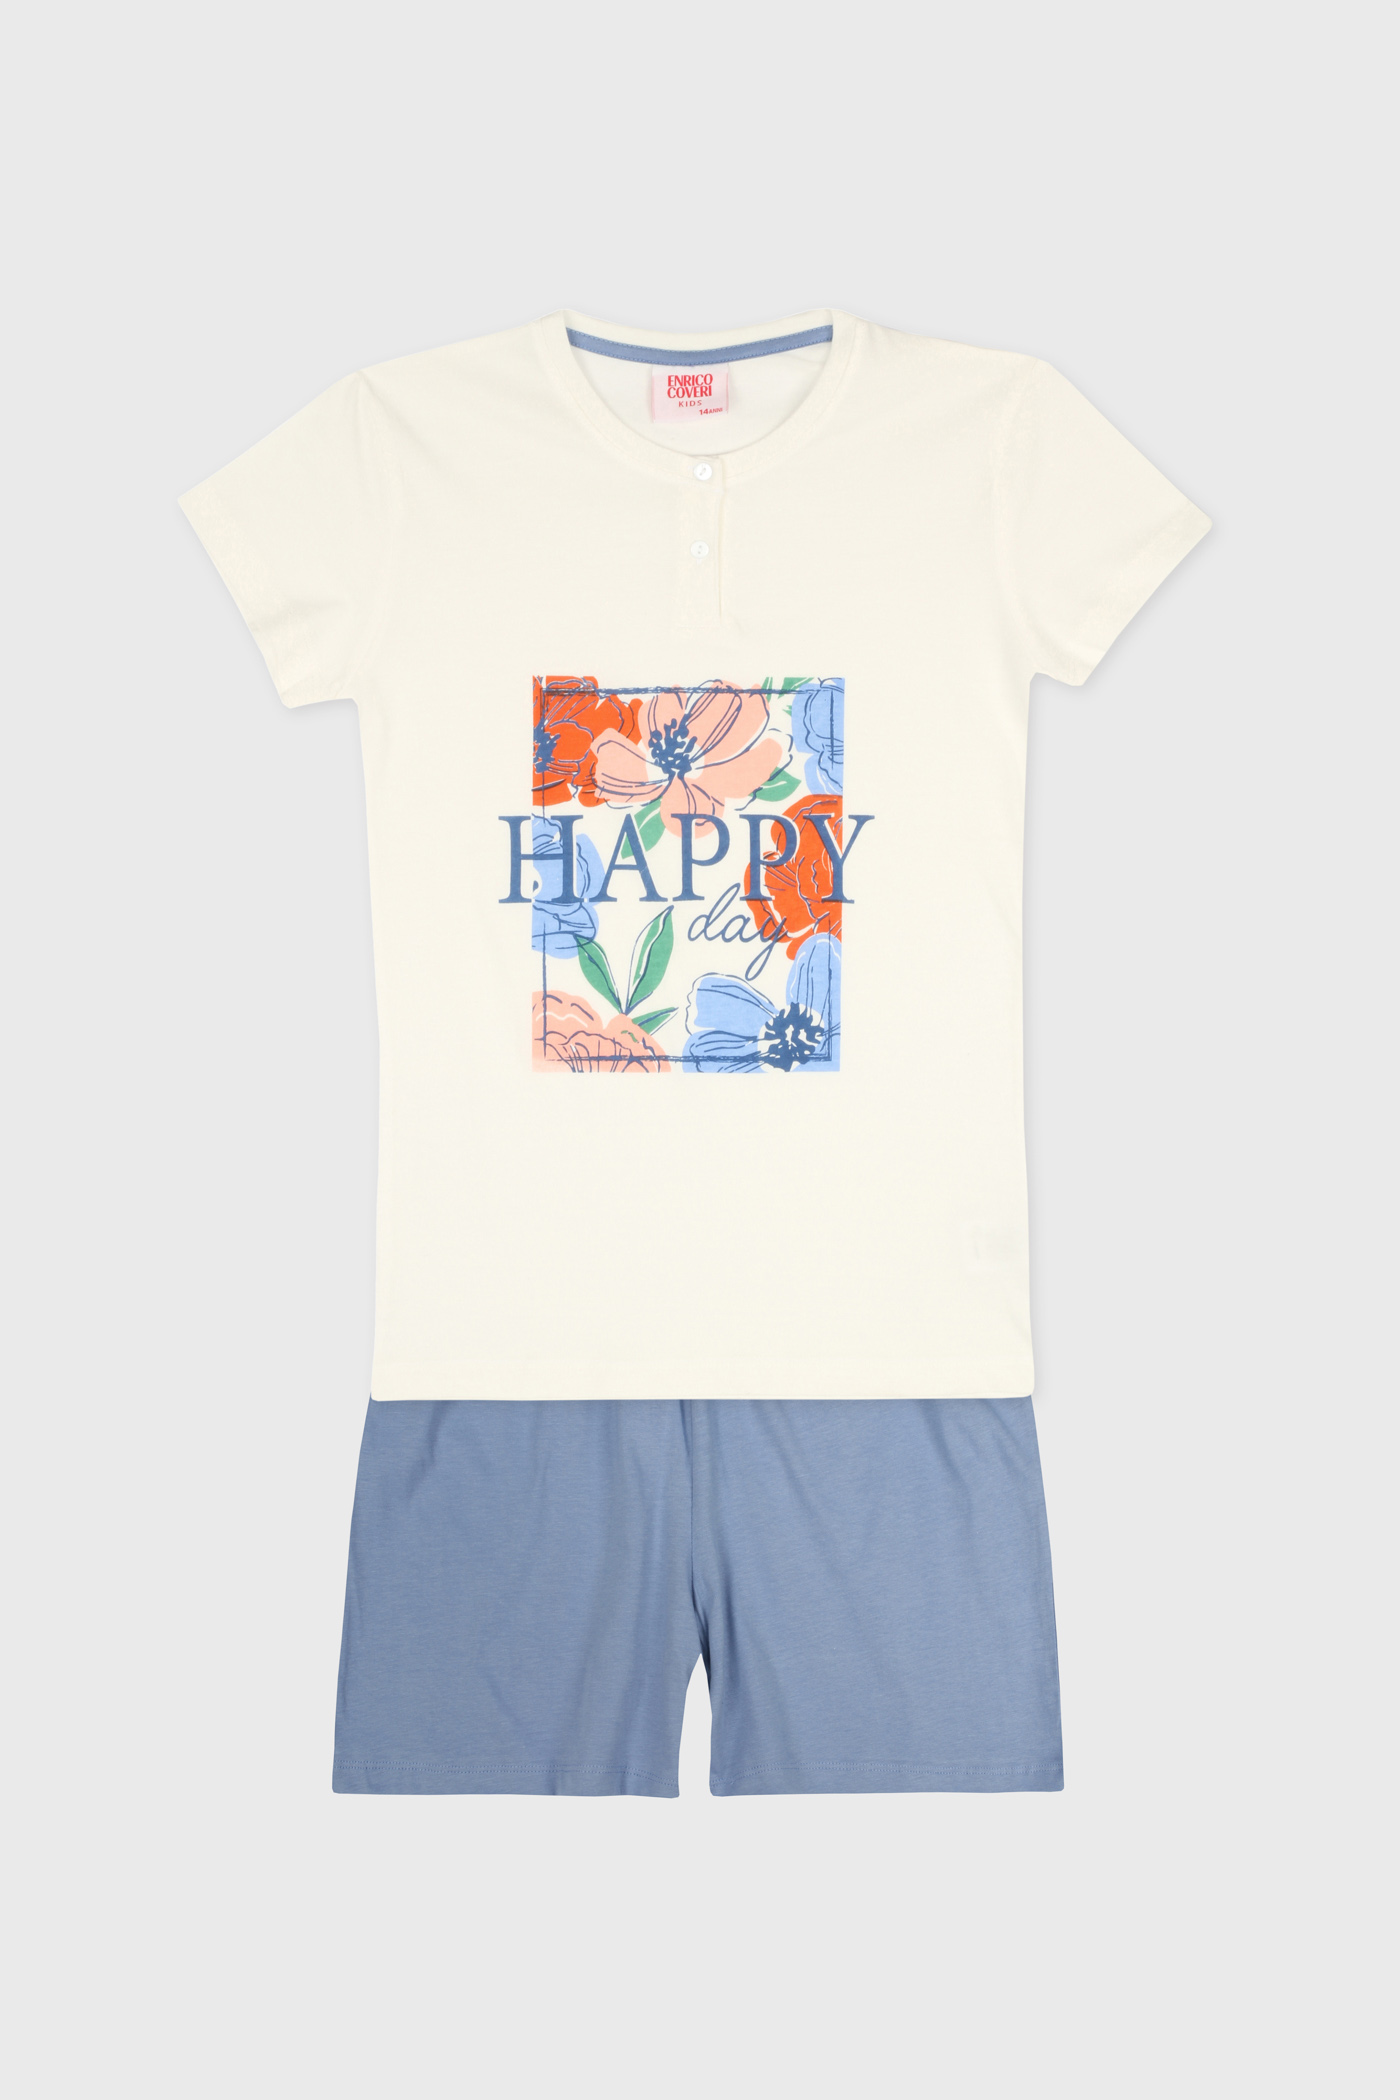 Dekliška pižama Happy Day